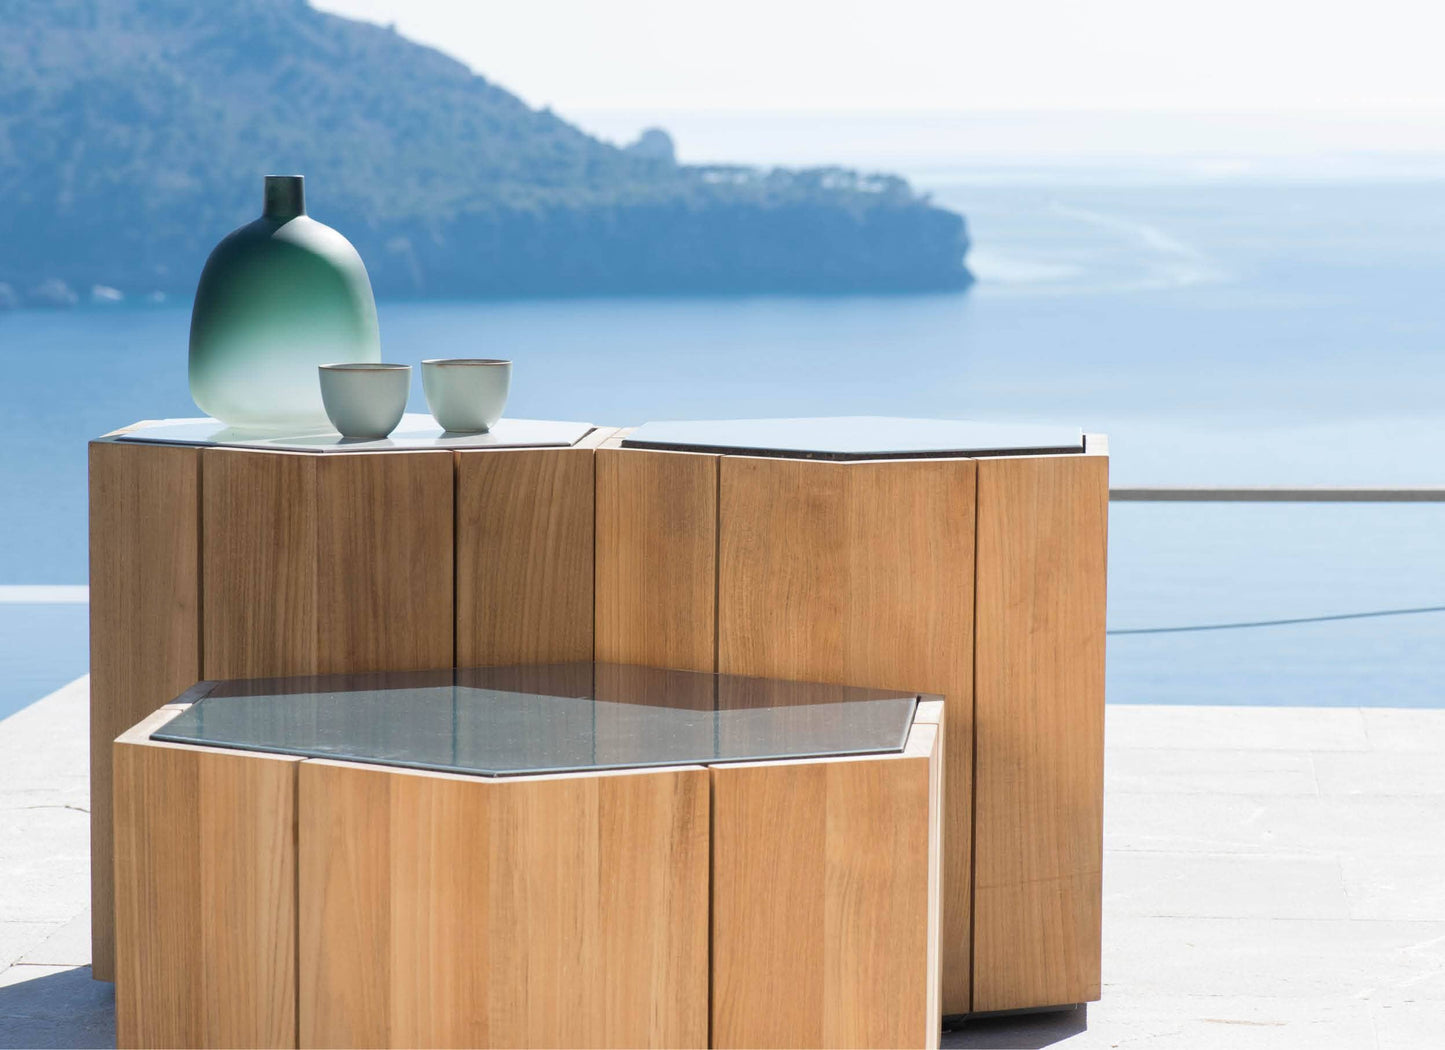 Hexagon Low Tables in Ocean 20% Off Outdoor Furniture Tribu 